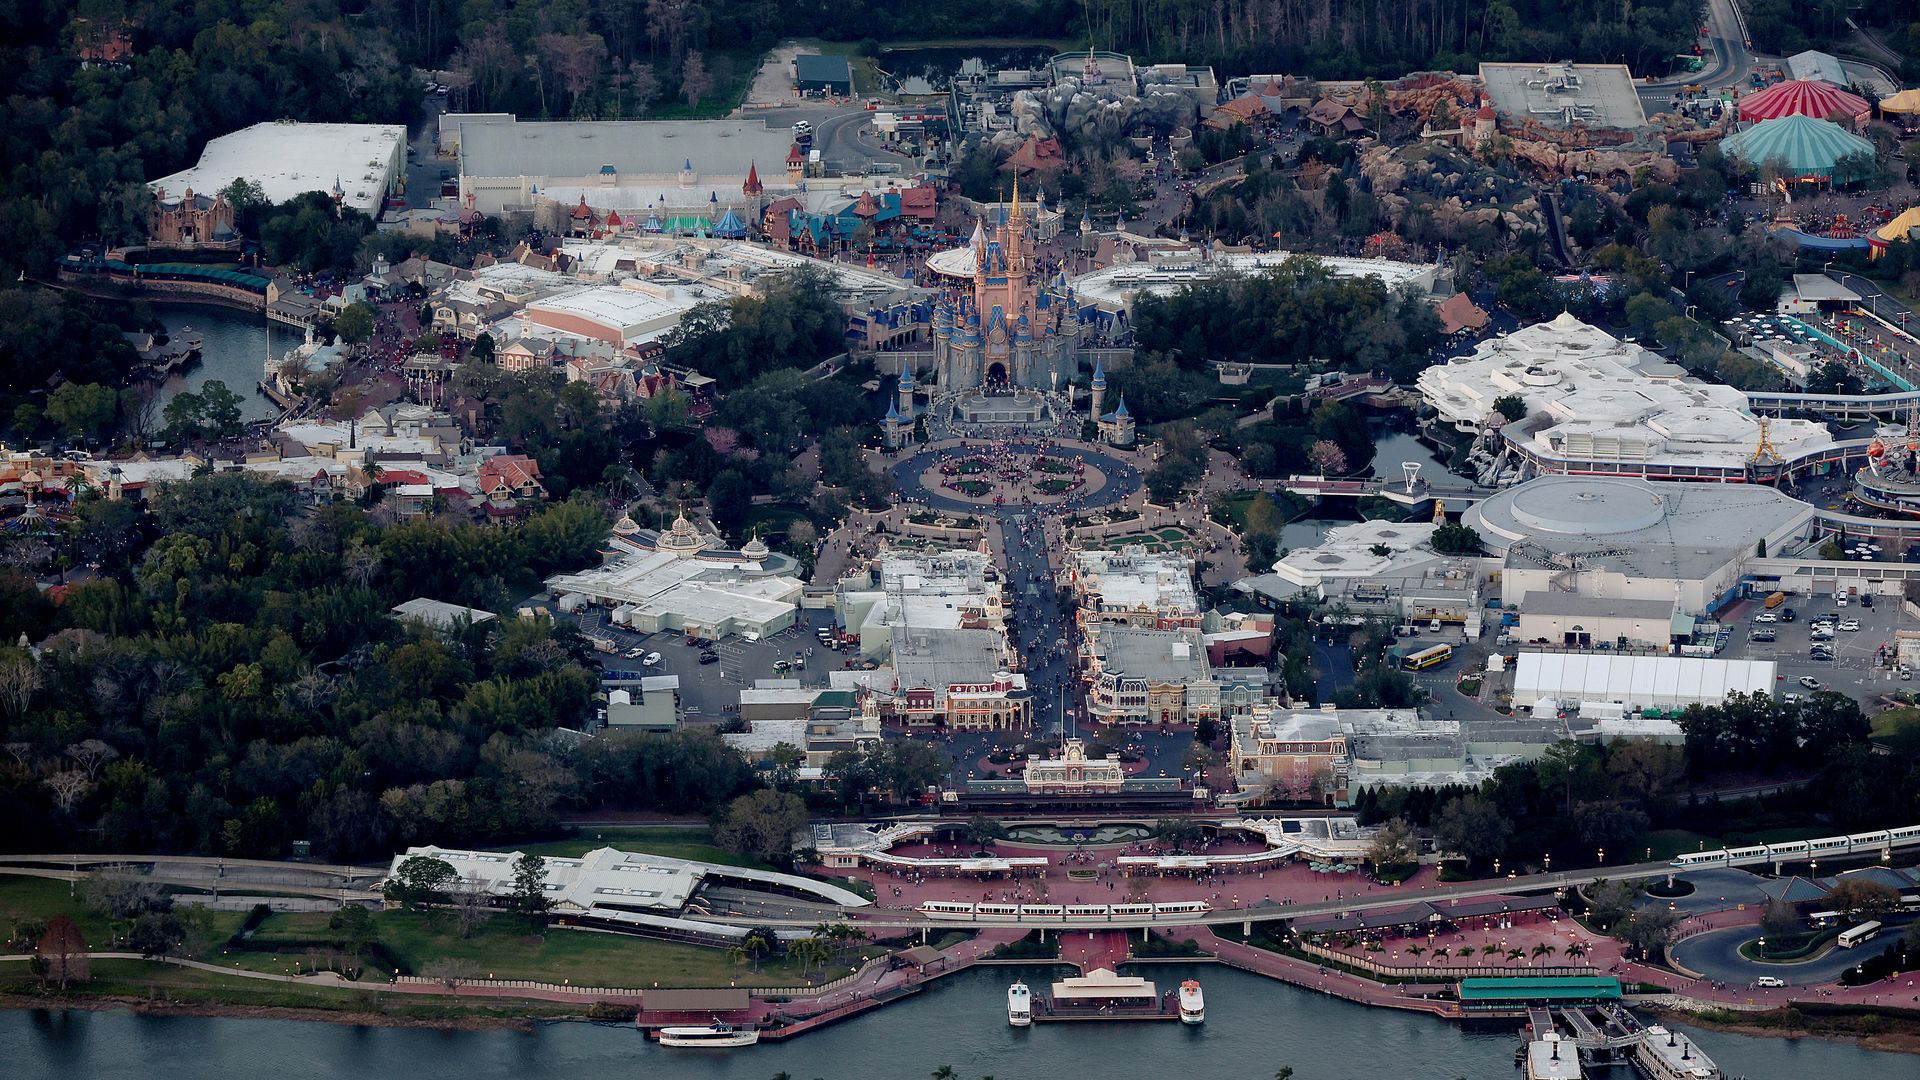 Walt Disney World in Orlando, Florida, in February 2023.